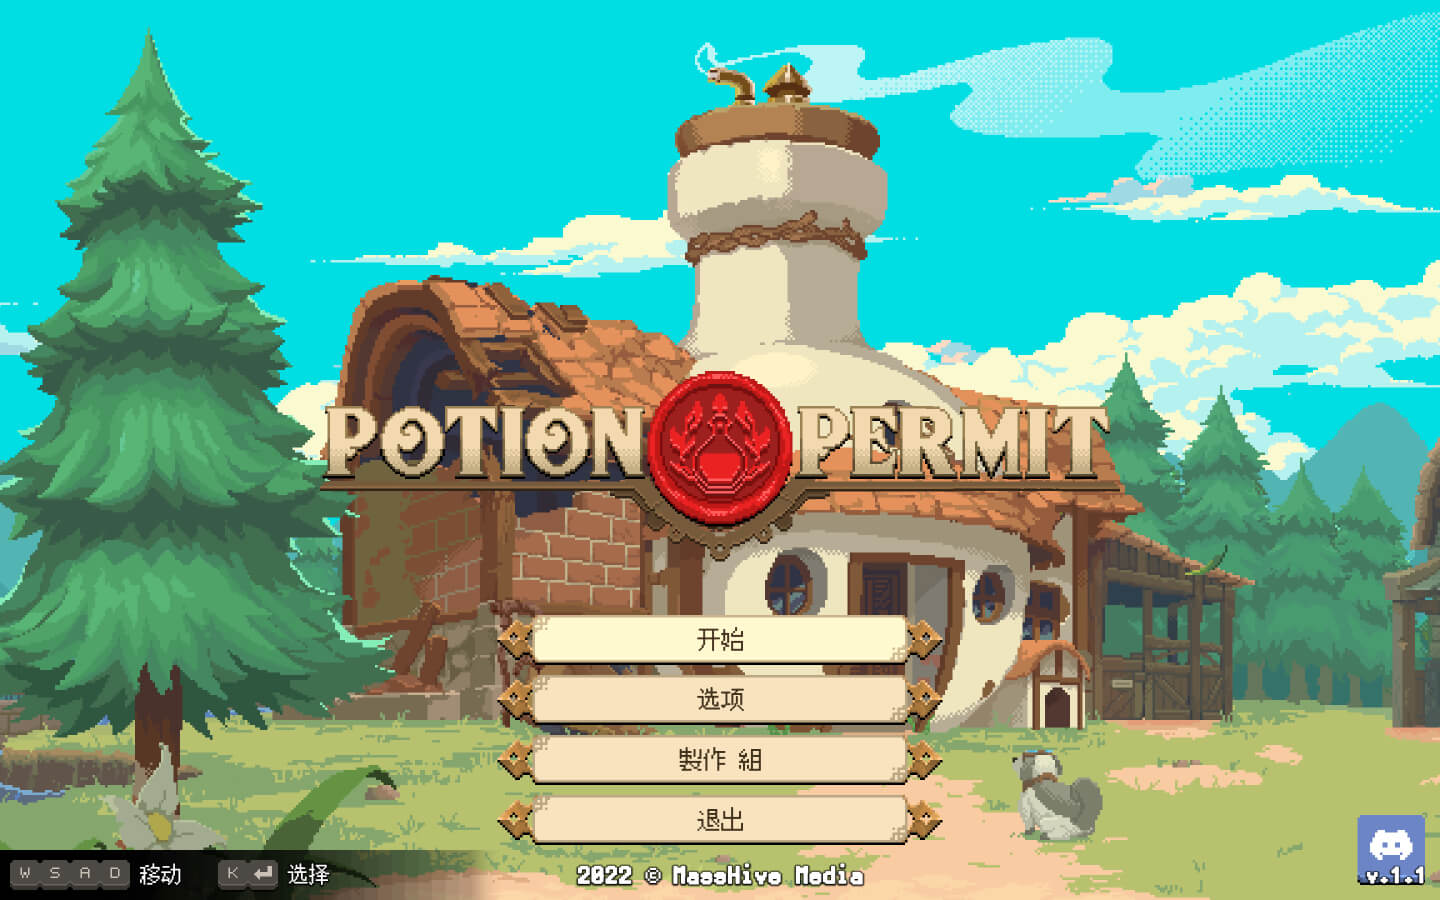 杏林物语豪华版 Potion Permit: Deluxe Edition for Mac v1.3.2 中文原生版-1